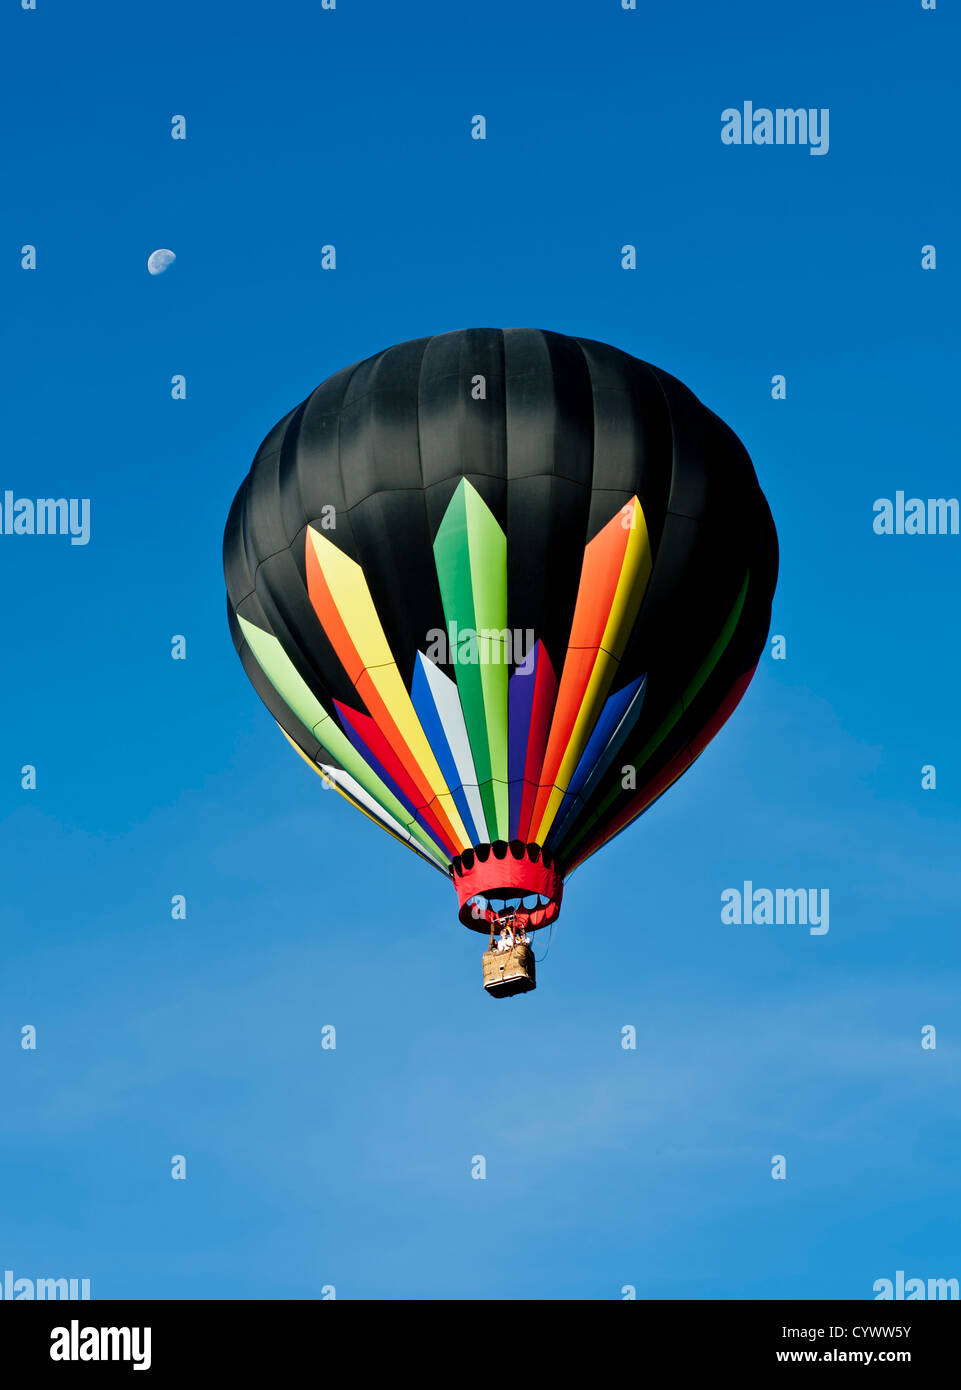 Hot Air Balloon contre un ciel bleu avec la lune au-dessus de la montgolfière Banque D'Images